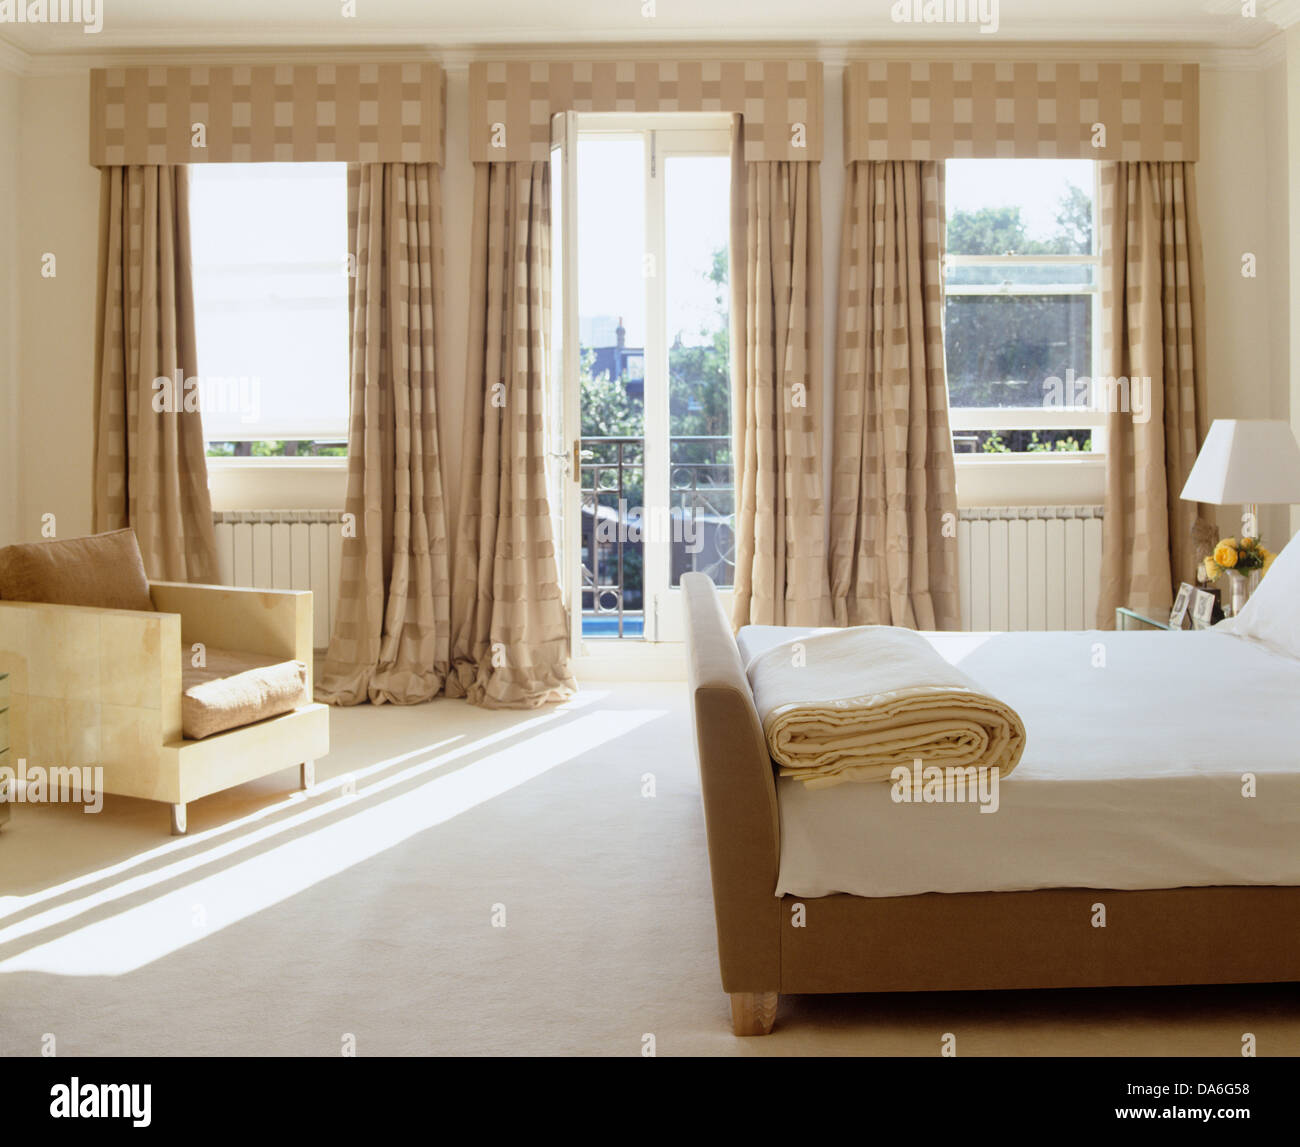 Cama doble y alfombra blanca en dormitorio contemporáneo con suntuosas  cortinas de seda y pelmets beige Fotografía de stock - Alamy